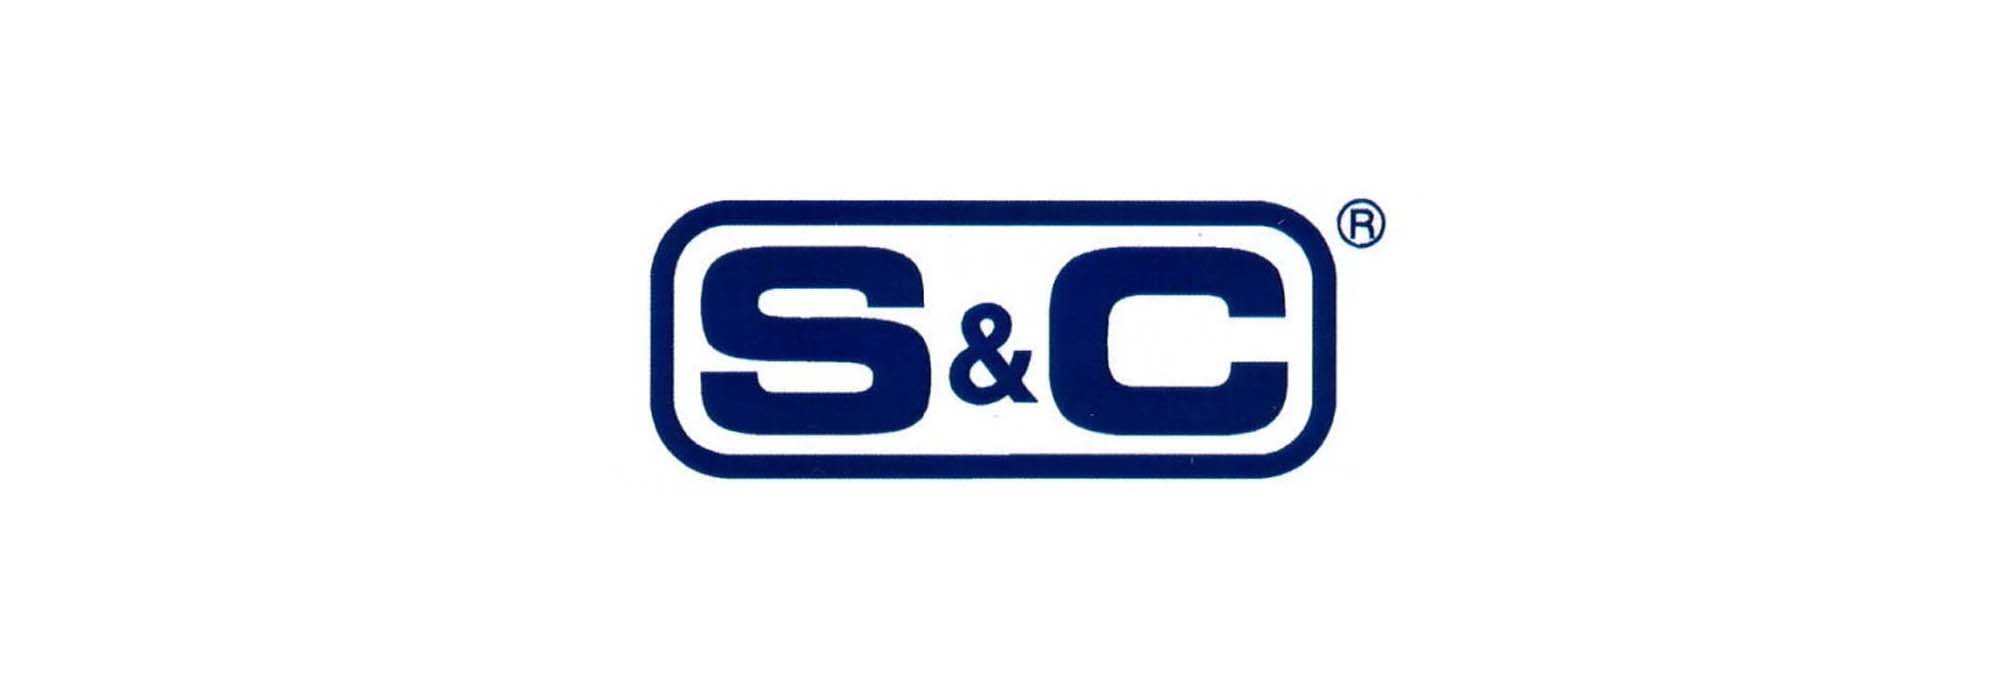 S&C